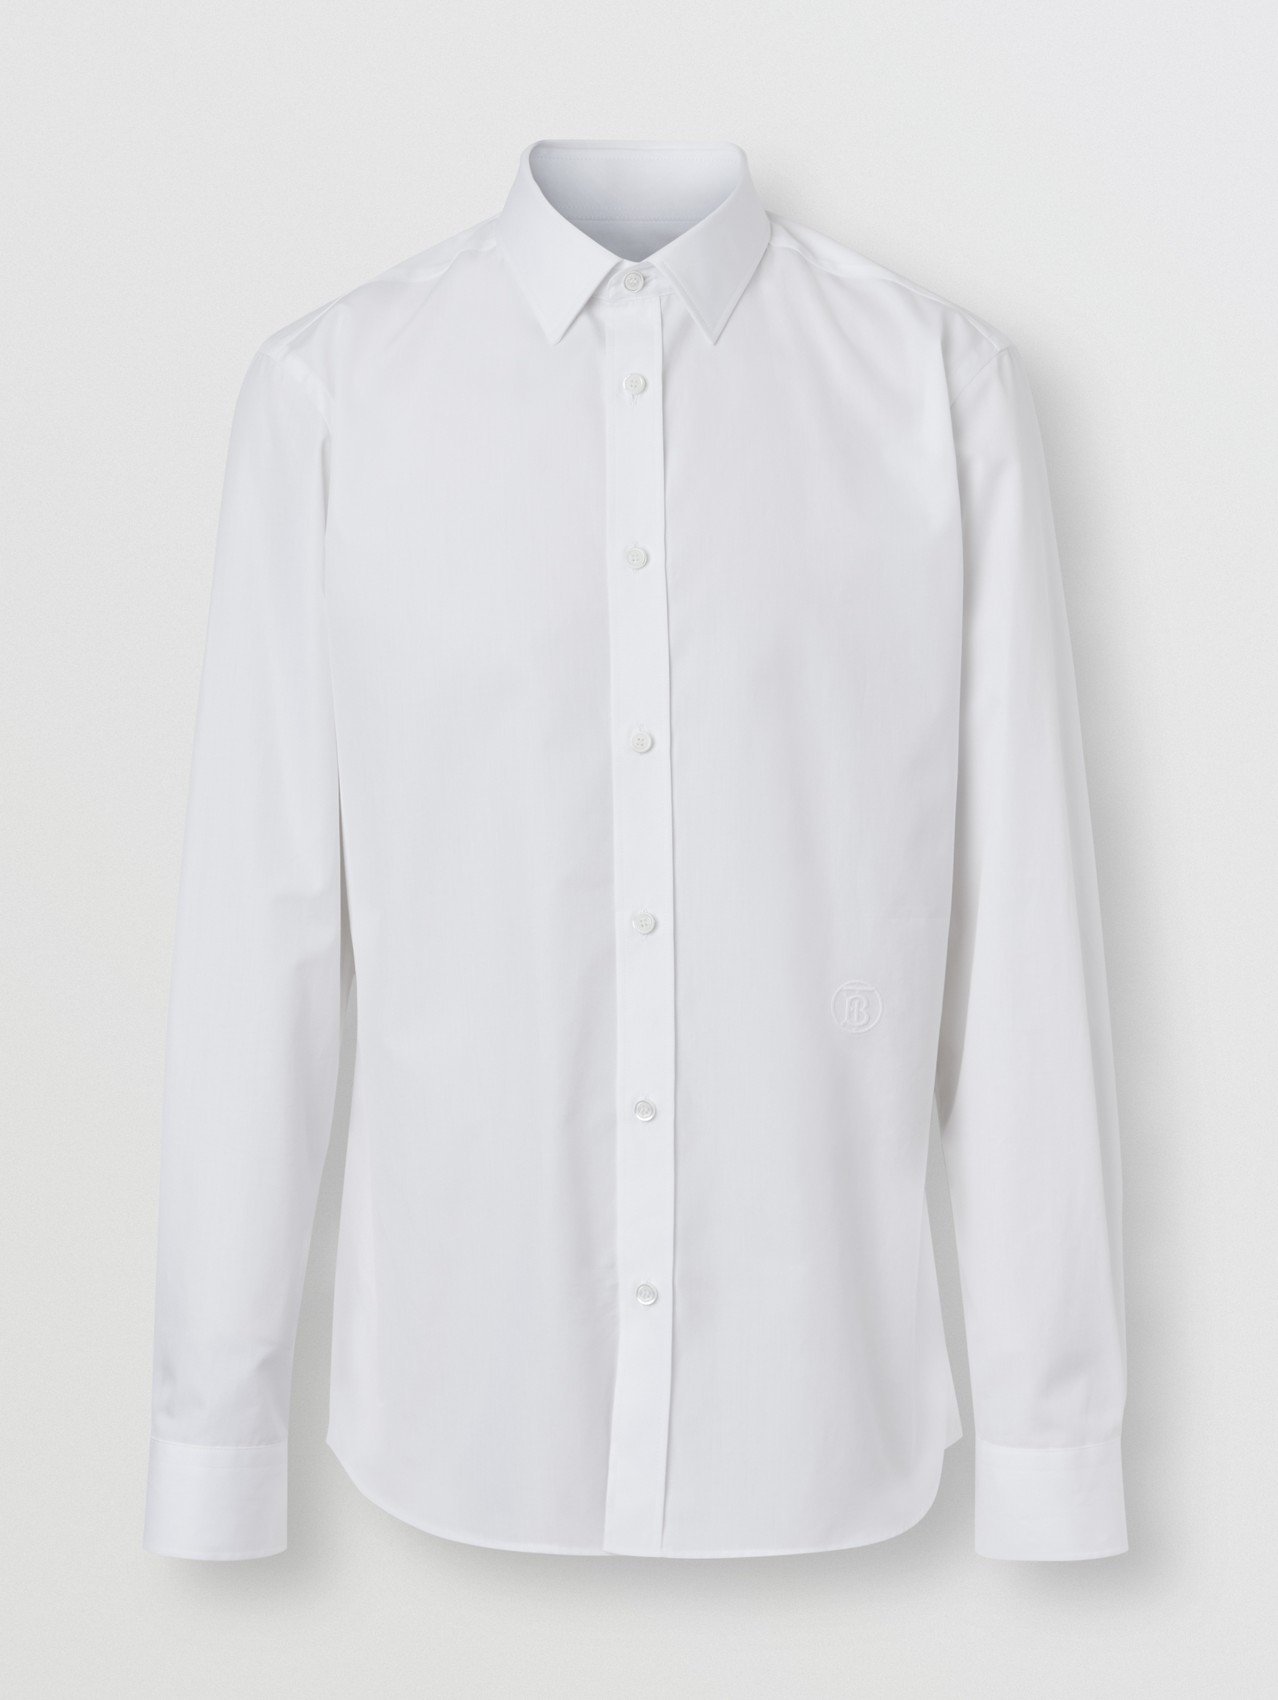 Körperbetontes Hemd aus Baumwollpopelin mit Monogrammmotiv (Weiß)